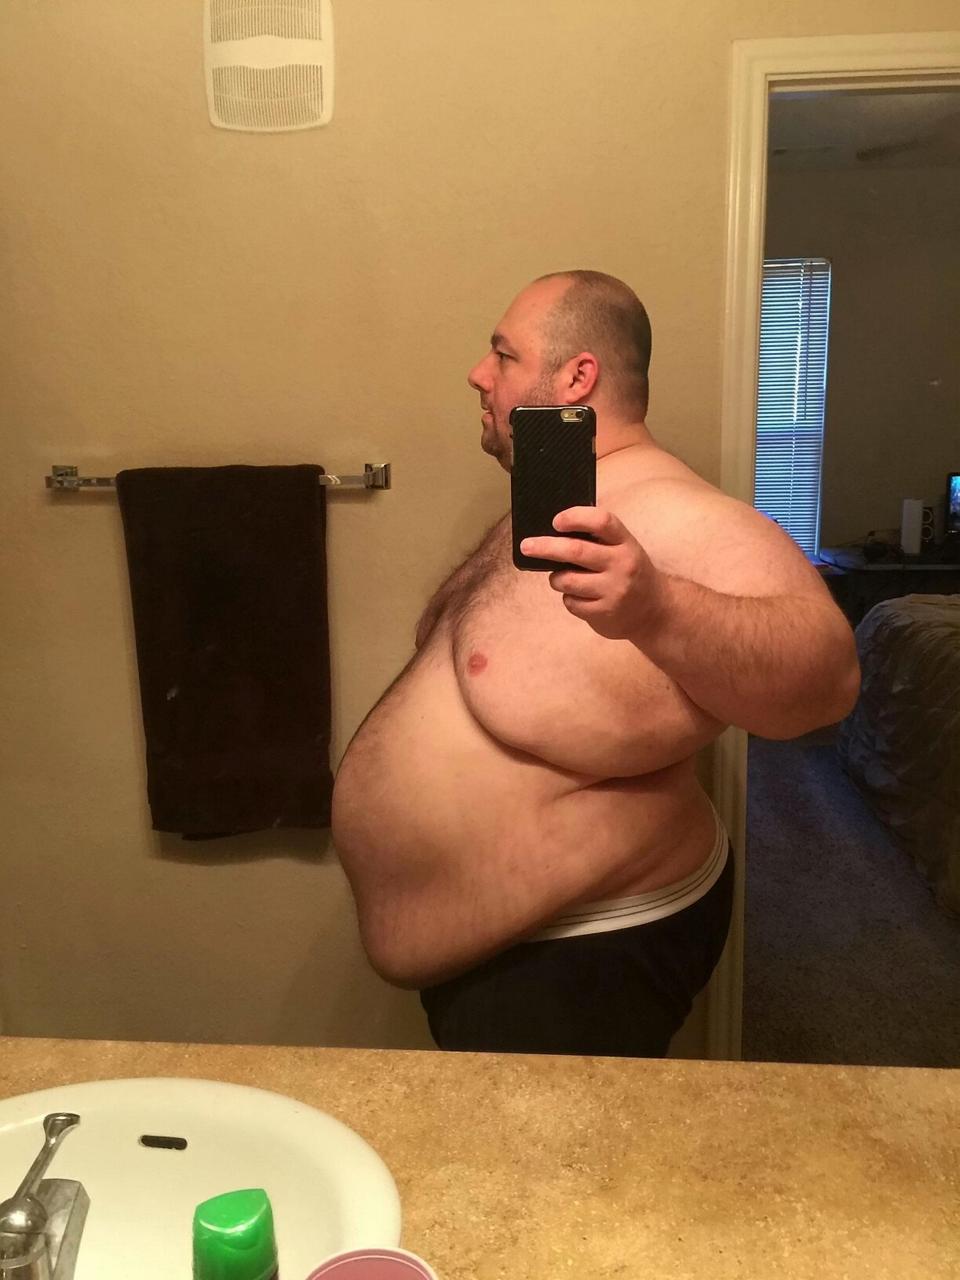 Avant/après : Trop gros pour satisfaire sa femme, il se met au régime et perd 90 kilos